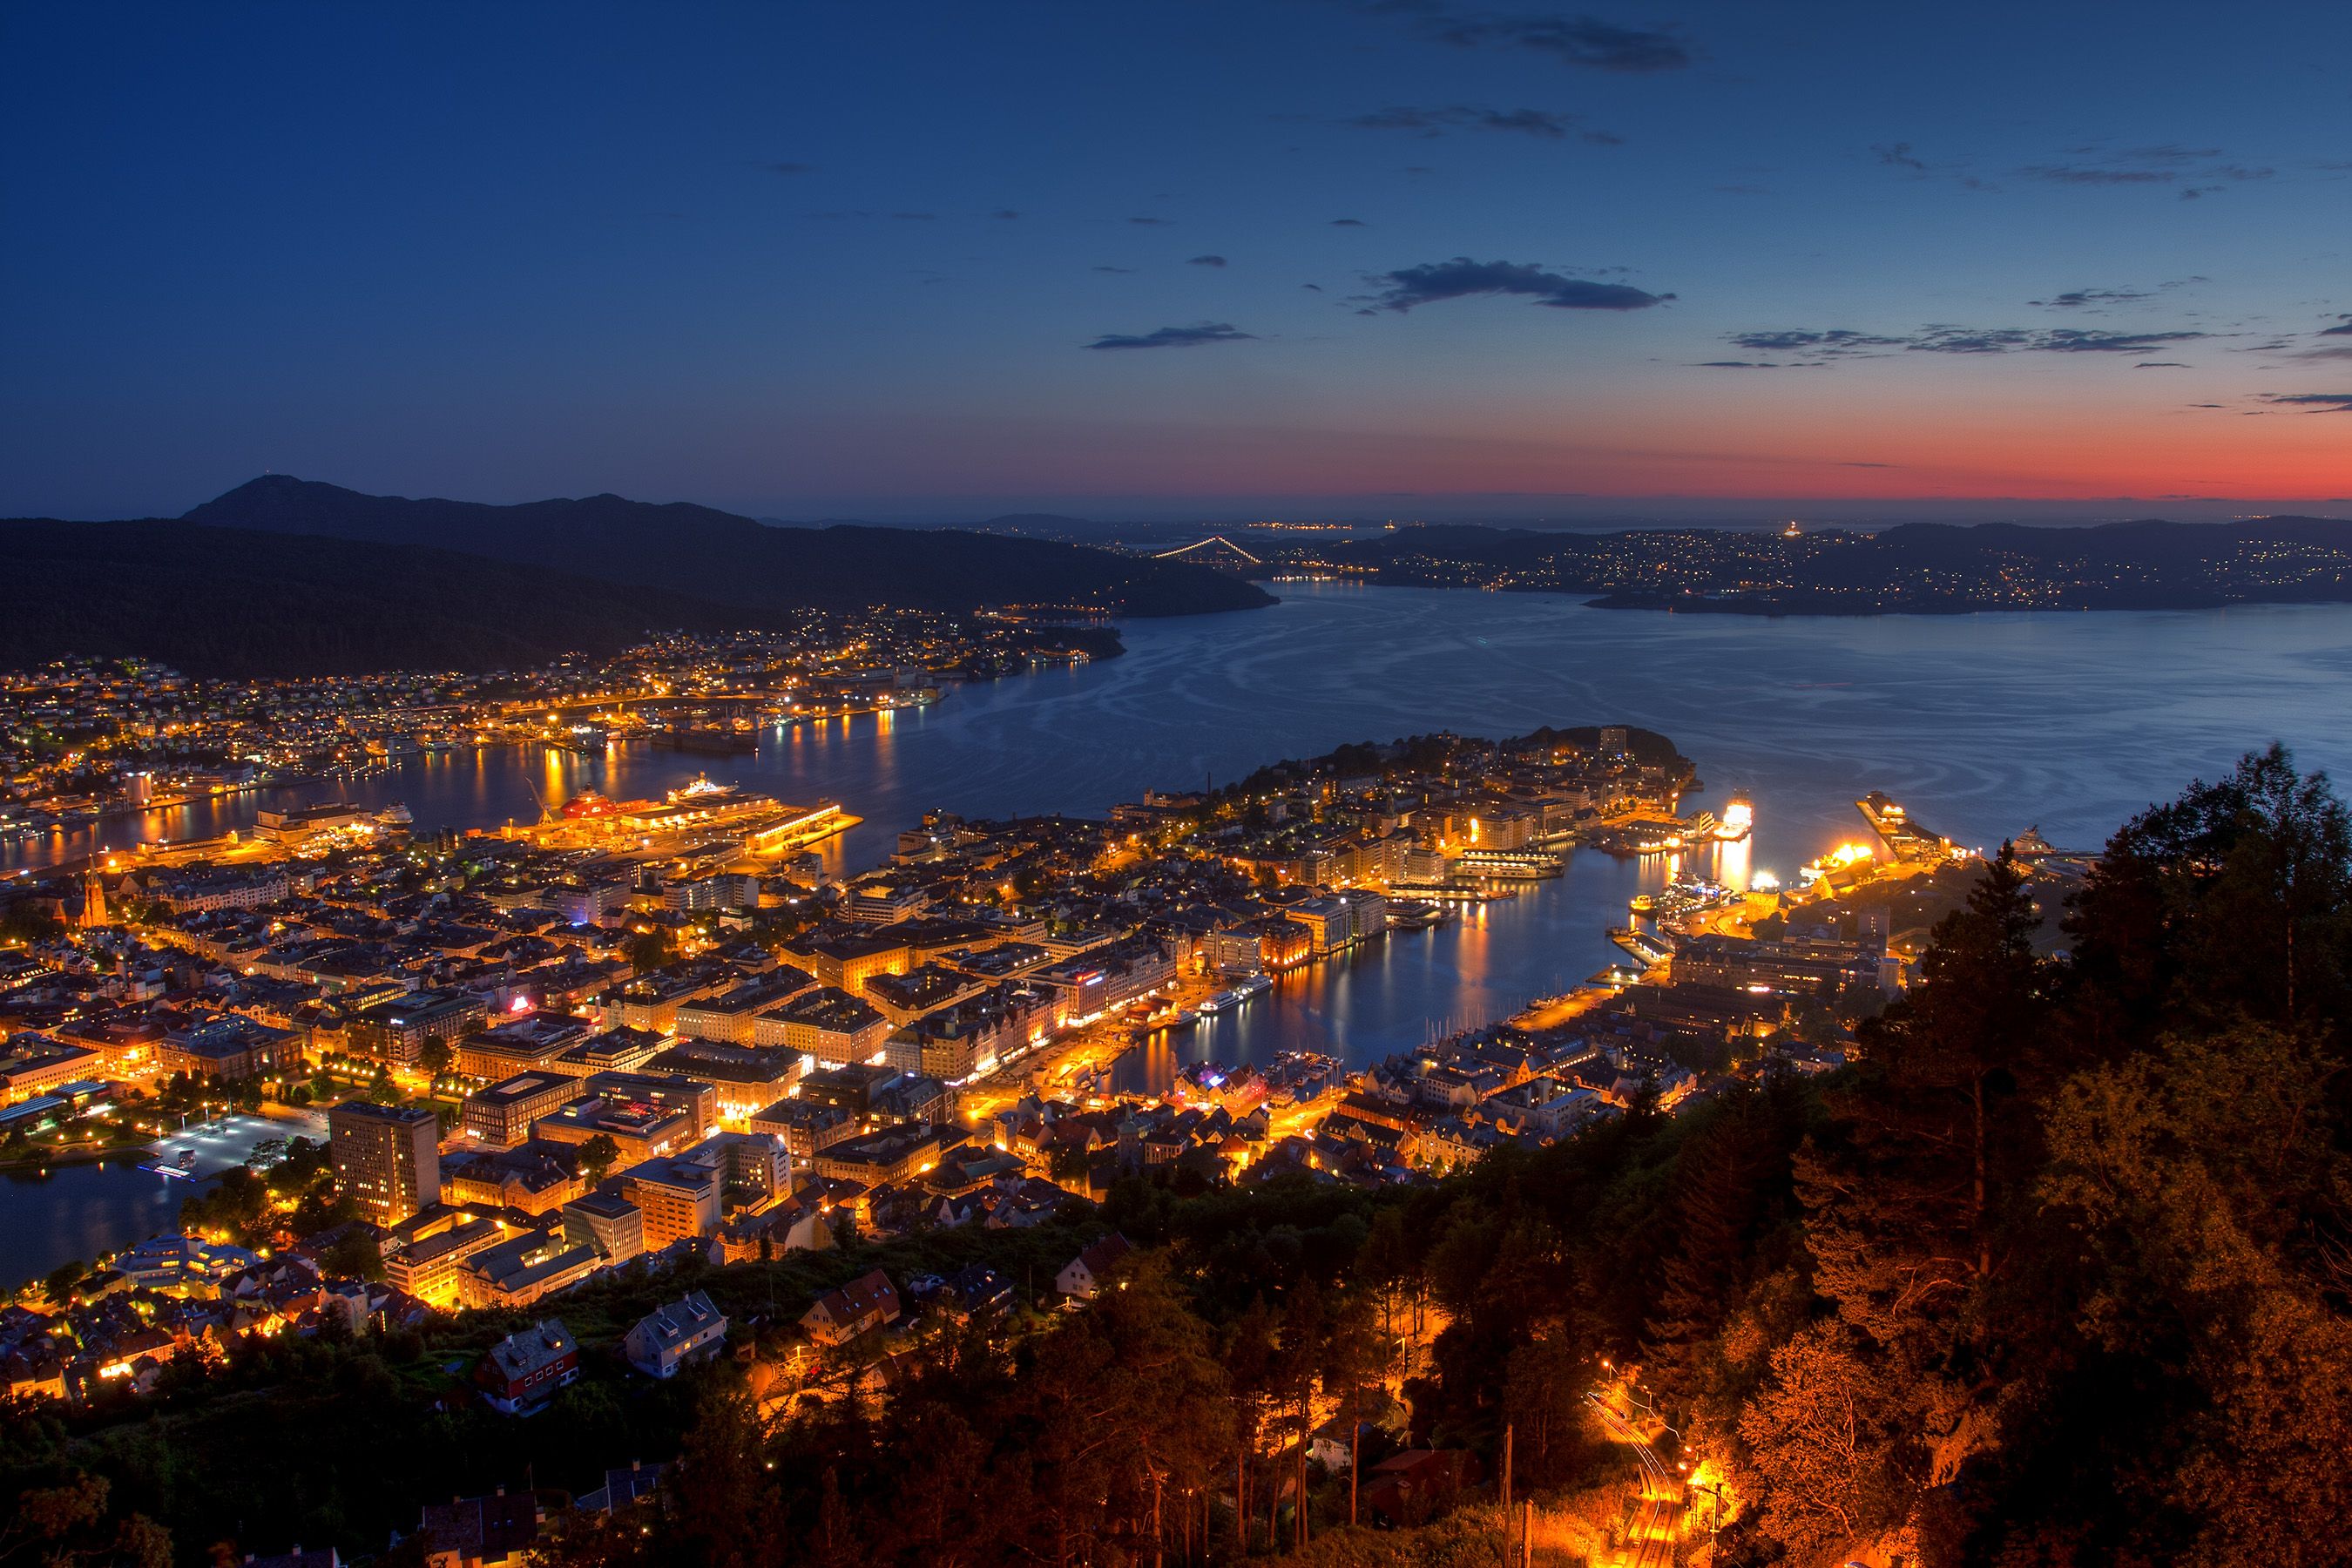 Night_view_from_Mount_Floyen_-_Bergen,_Norway.jpg